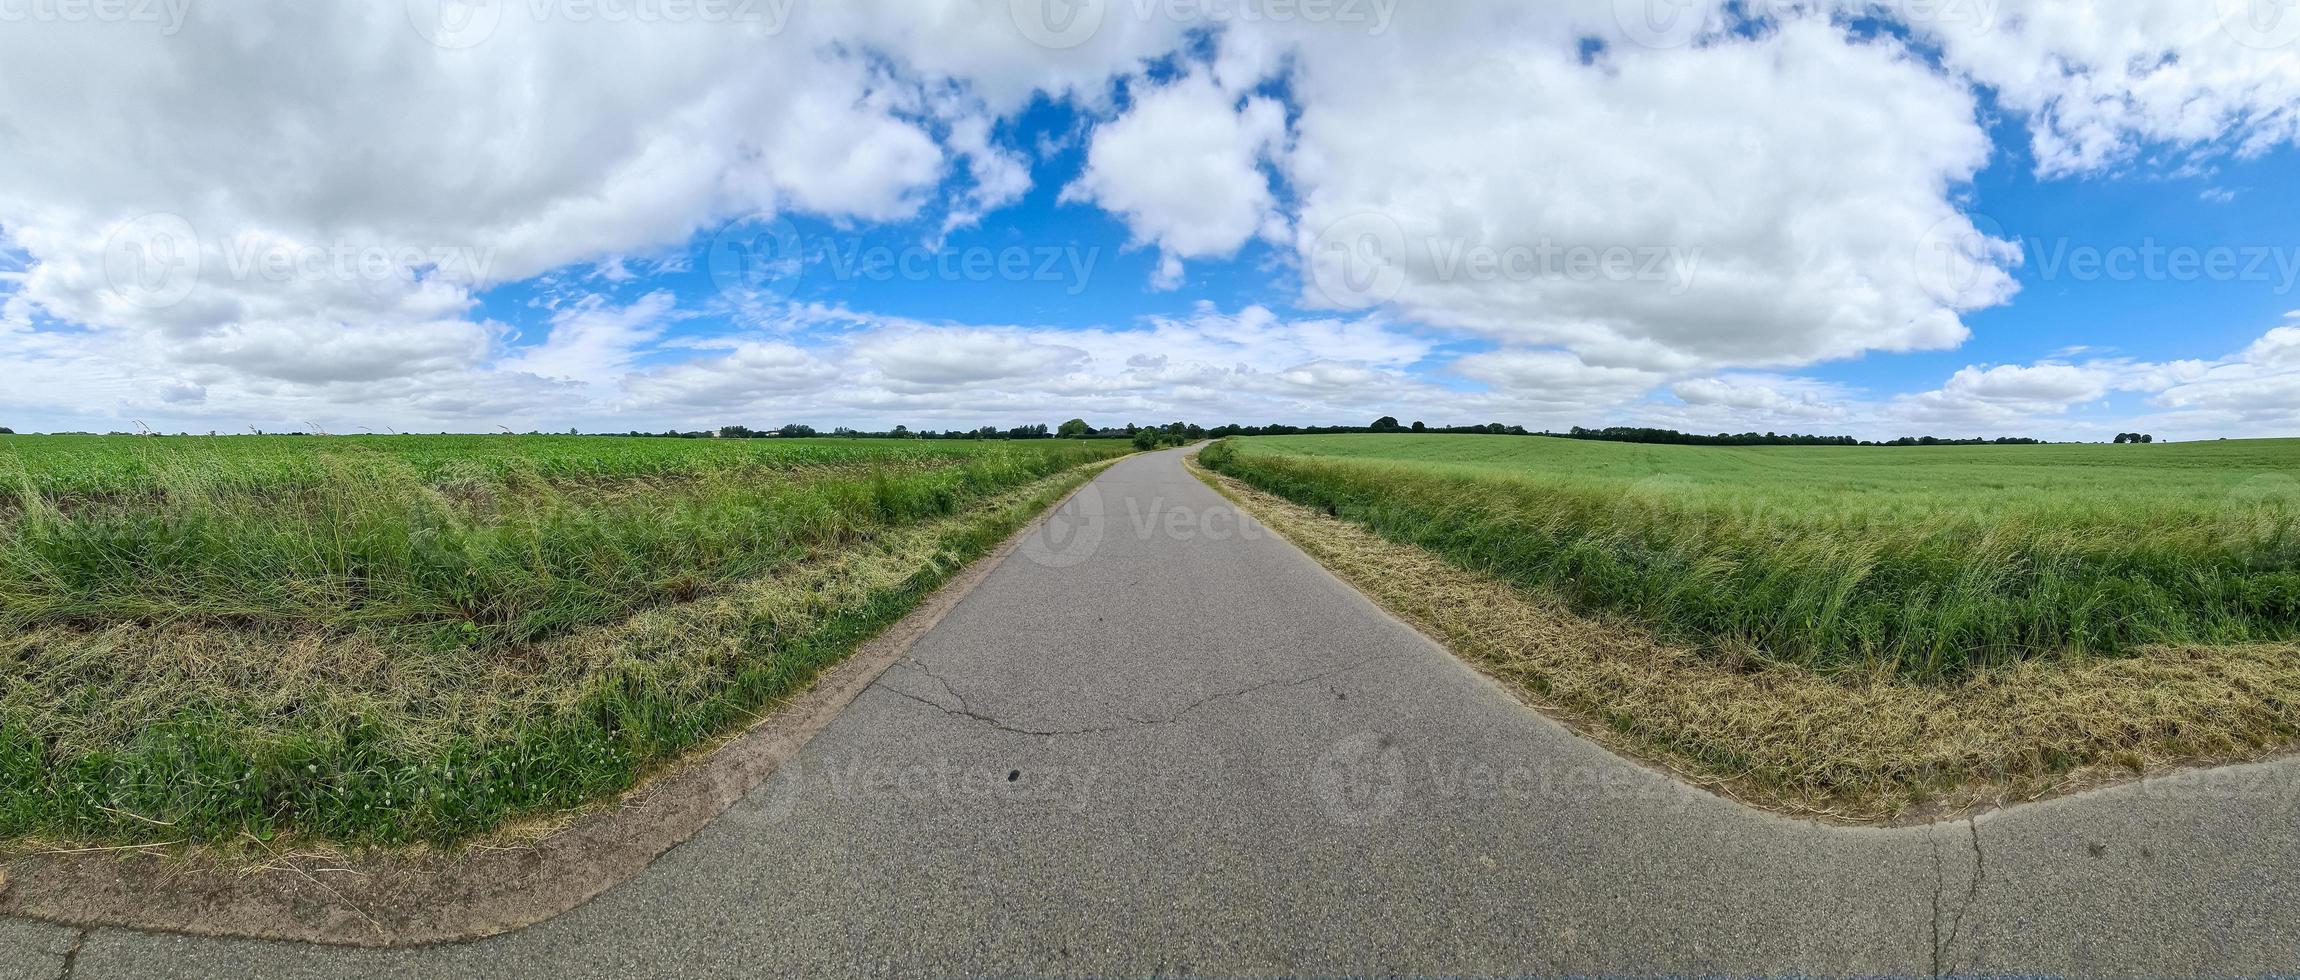 Panorama einer nordeuropäischen Landschaft mit Straßen, Feldern und grünem Gras. foto